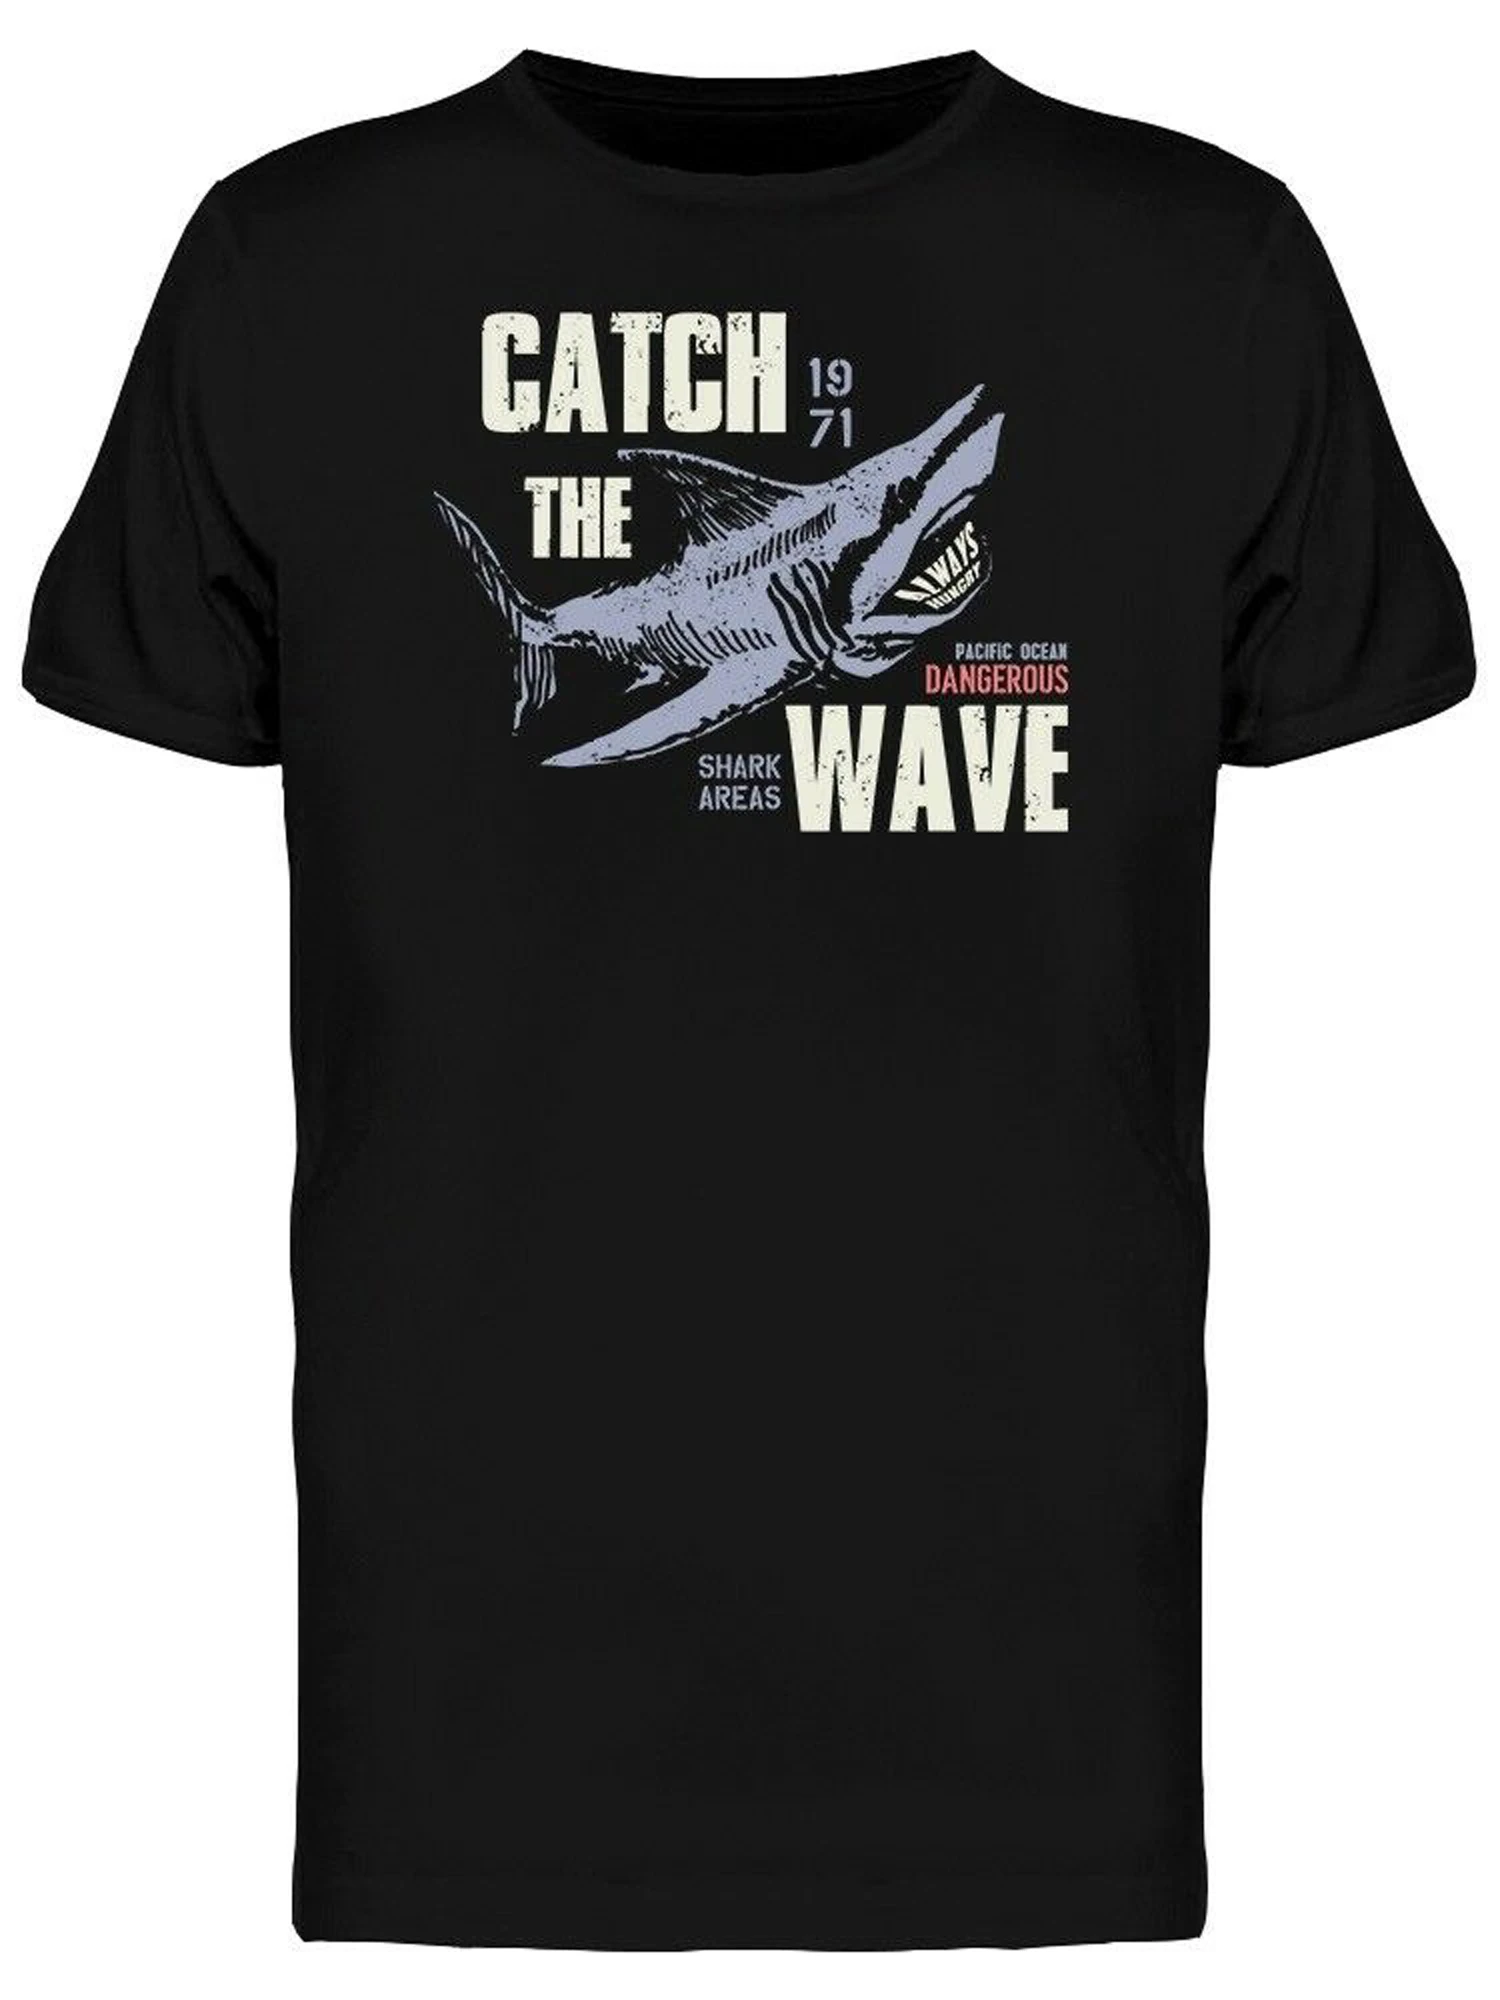 

Pacific Ocean Dangerous Shark Areas Catch The Wave T-Shirt. Summer Cotton O-Neck Short Sleeve Mens T Shirt New S-3XL